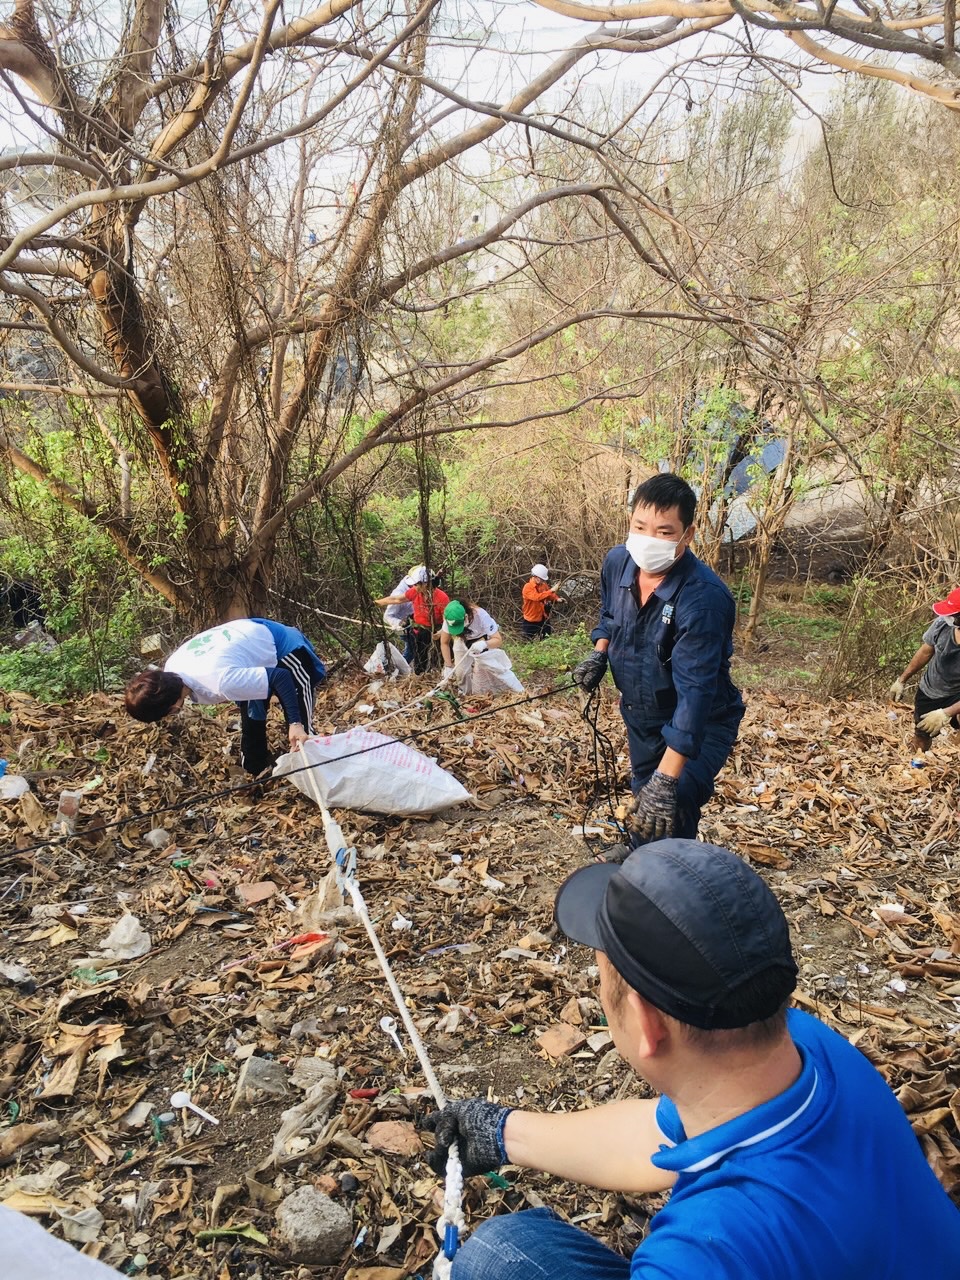 CLB biển xanh sạch đẹp tham gia thu gom rác ở khu vực mũi Nghinh Phong sáng 30/4 góp phần làm sạch thành phố trong những ngày cao điểm của kỳ nghỉ lễ